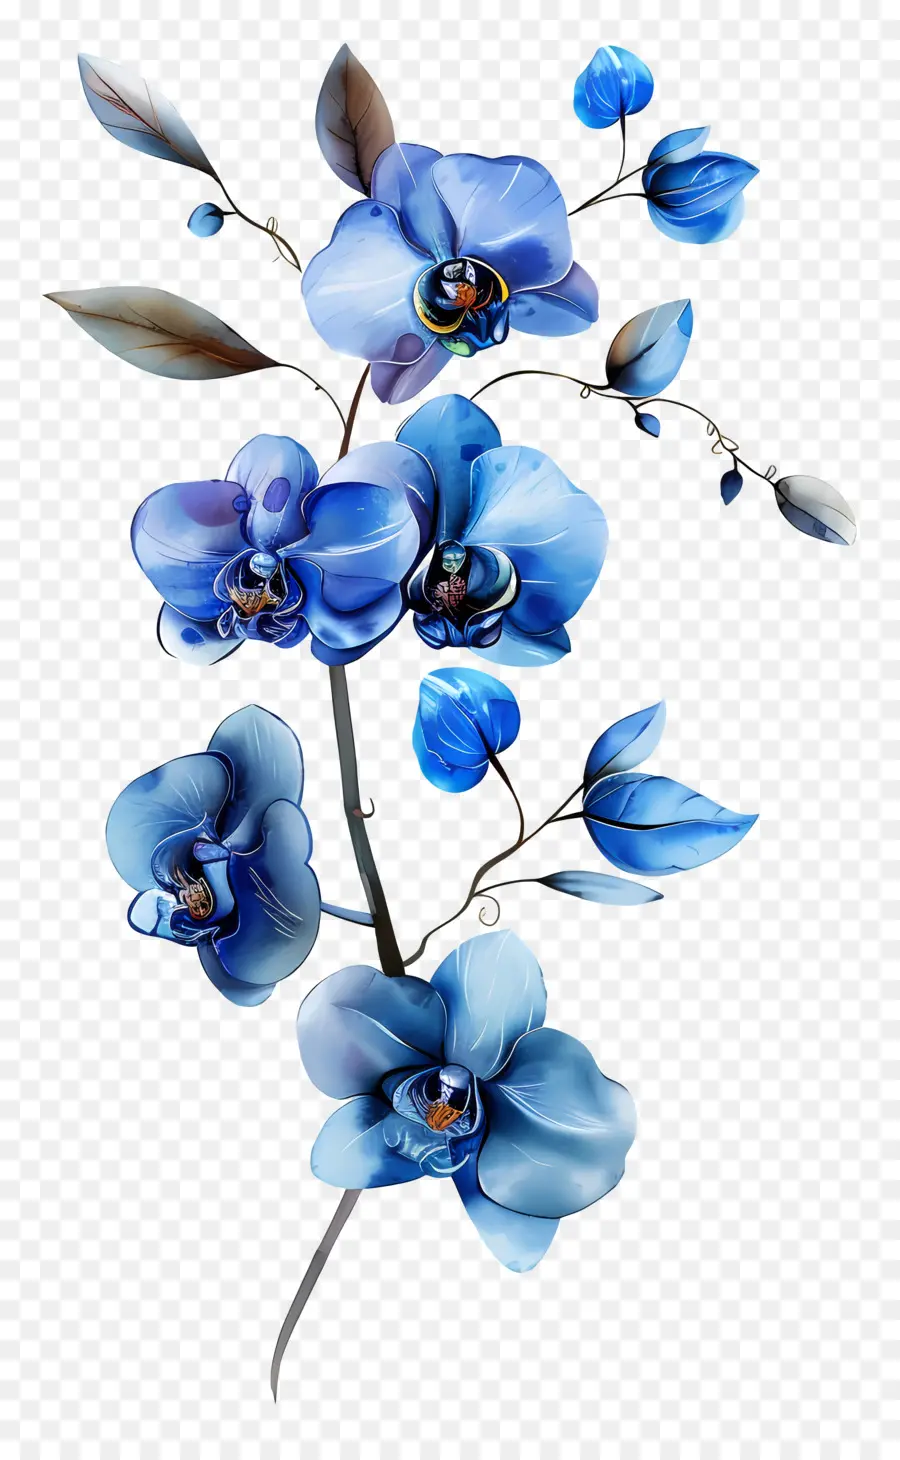 blue orchids blue orchids bouquet flowers pink blooms